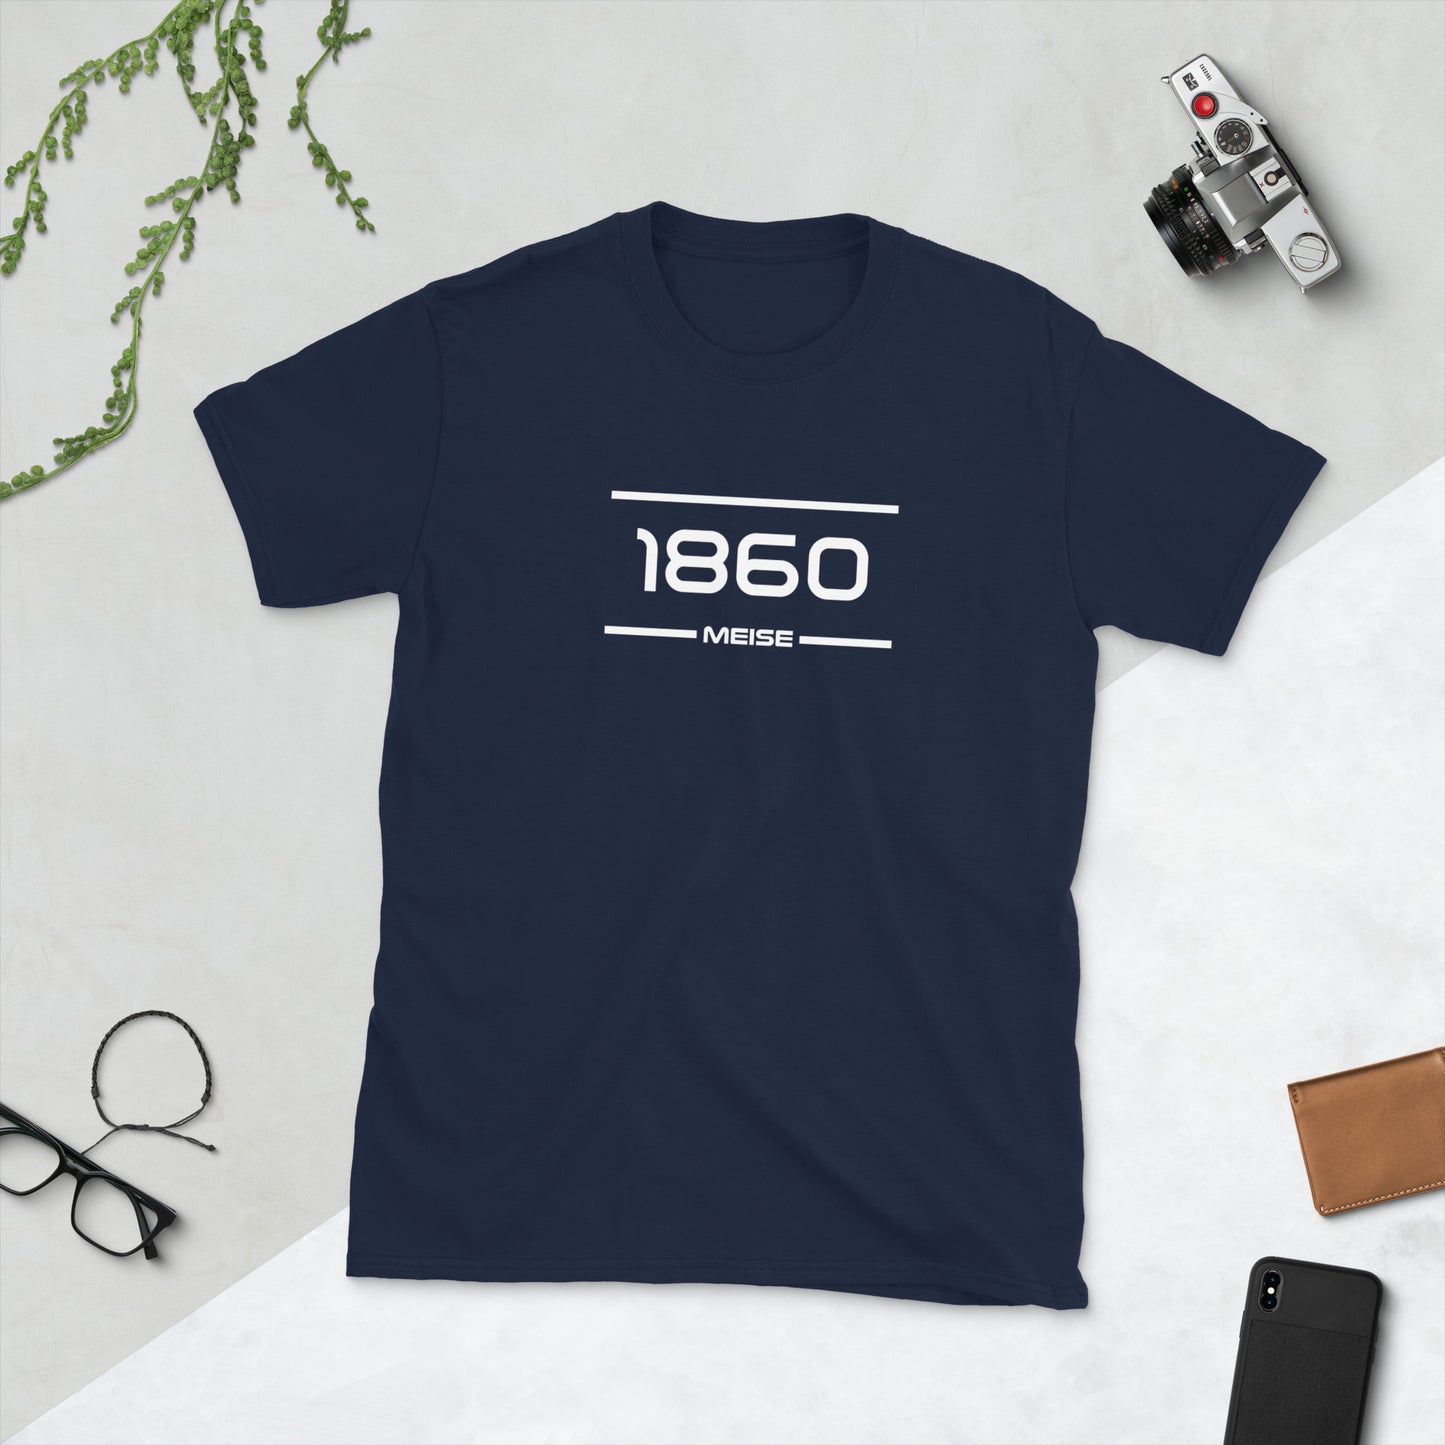 Tshirt - 1860 - Meise